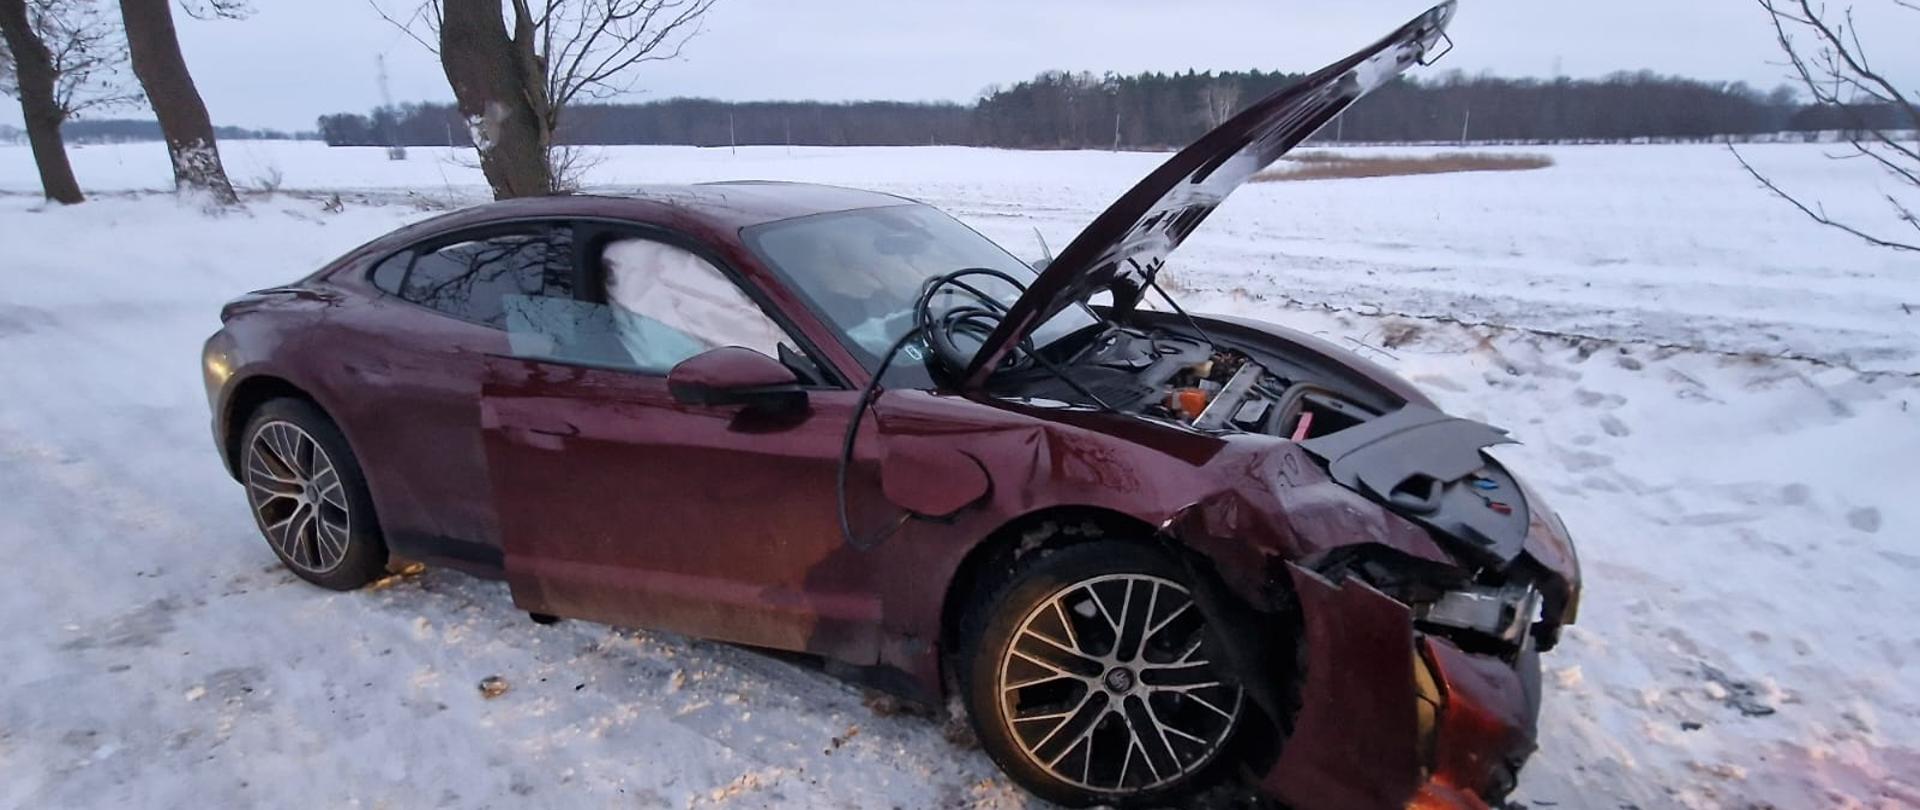 Bordowy samochód na drodze, ma uszkodzony prawy bok i przód, w koło śnieg